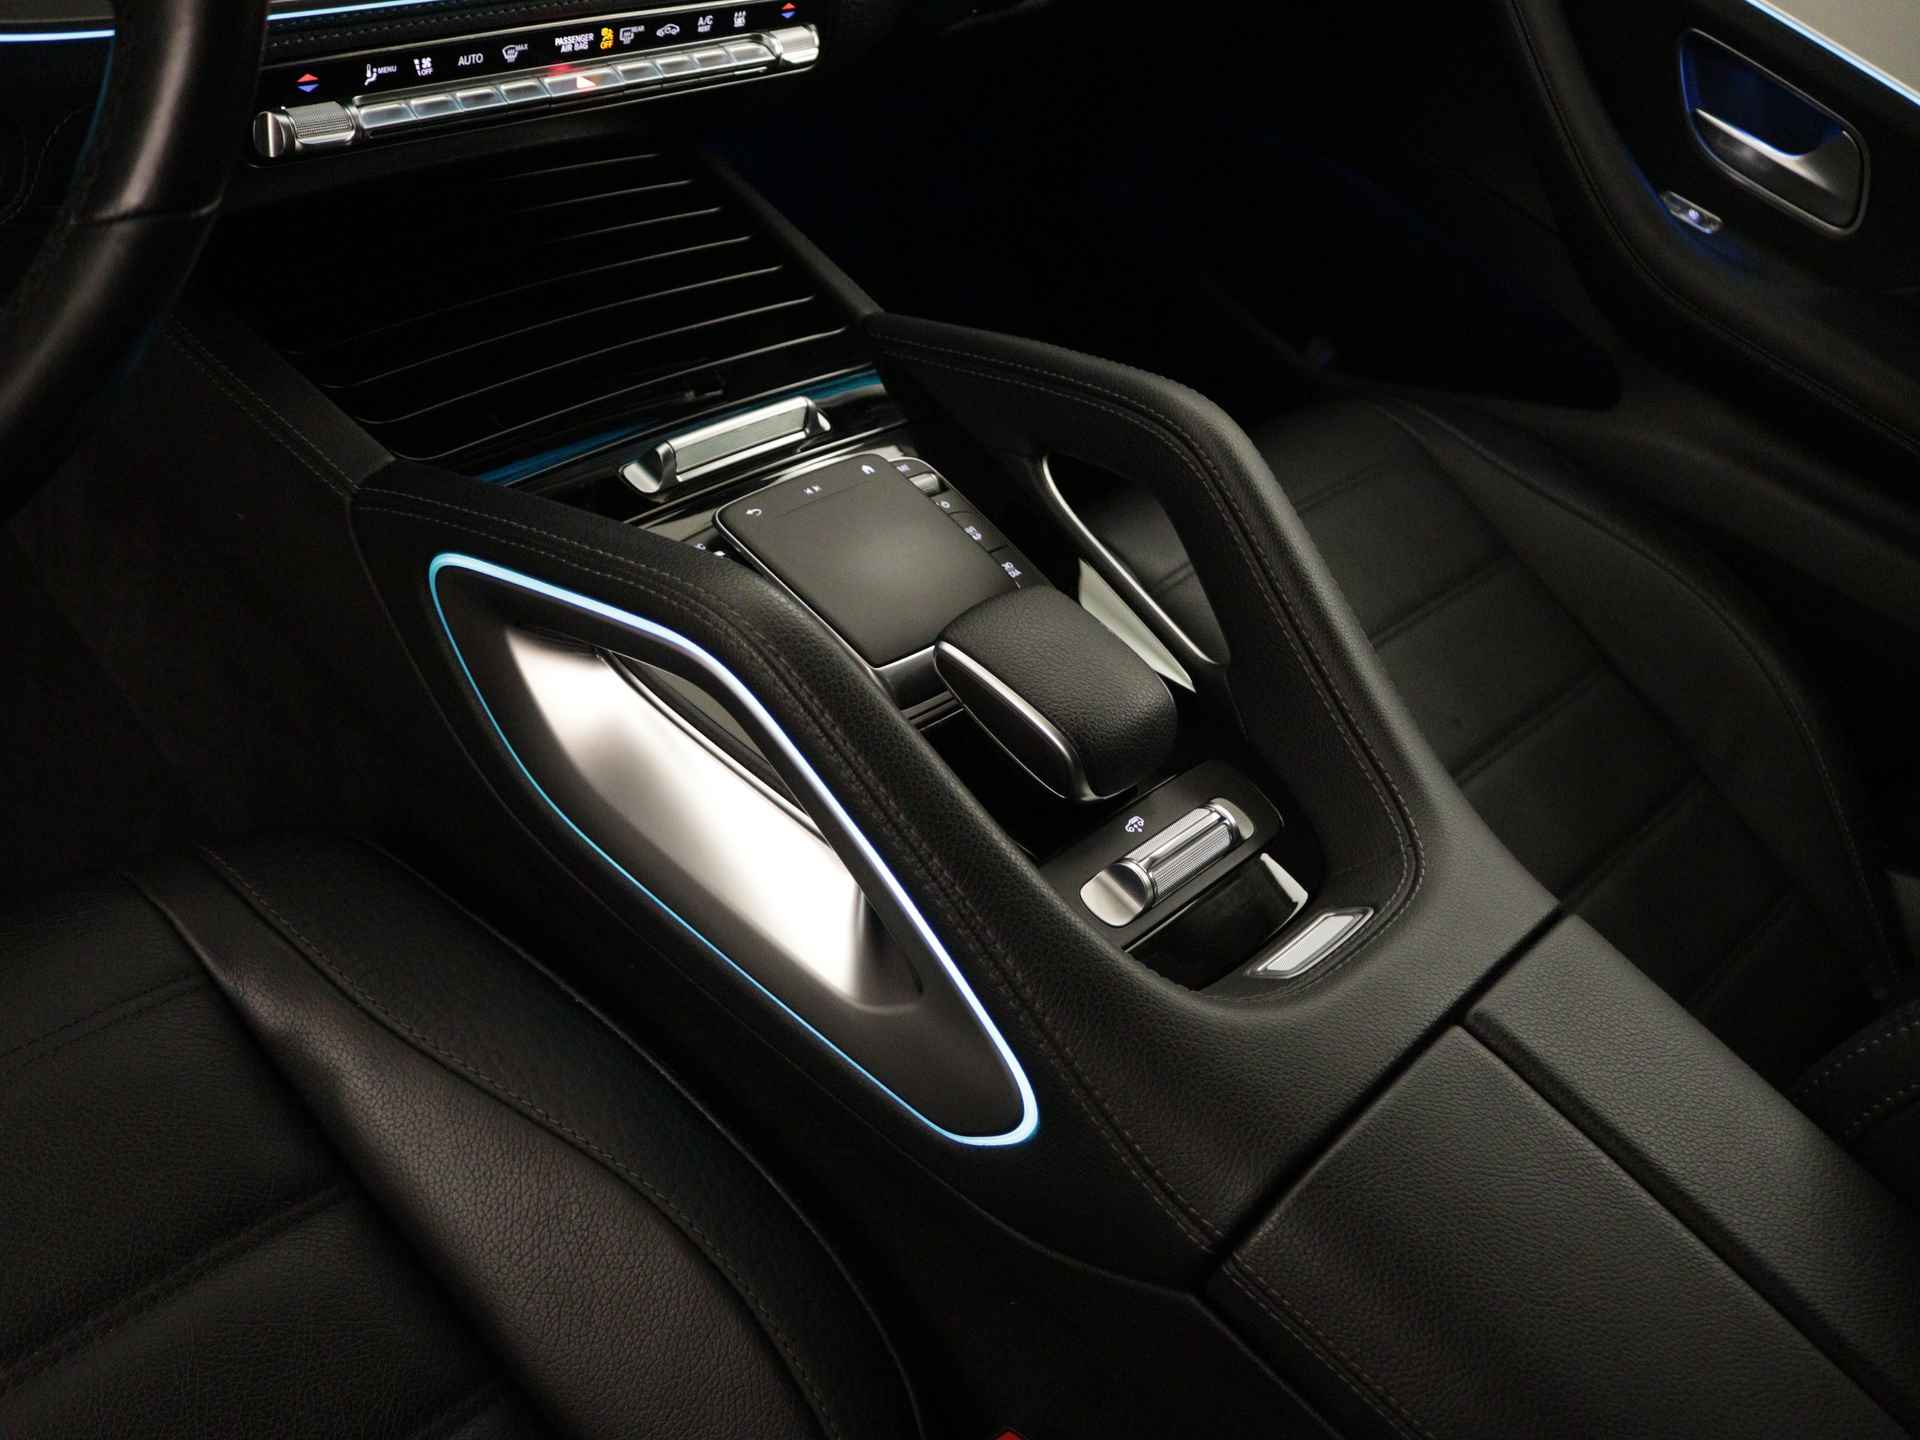 Mercedes-Benz GLE 350 e 4-MATIC AMG Nightpakket Limited 5 spaaks lichtmetalen velgen | Trekhaak | Airmatic | Treeplanken | Alarm klasse 3 |  Augmented Reality | sfeerverlichting | DAB | Parking support | inclusief 24 maanden MB Certified garantie voor europa - 13/45